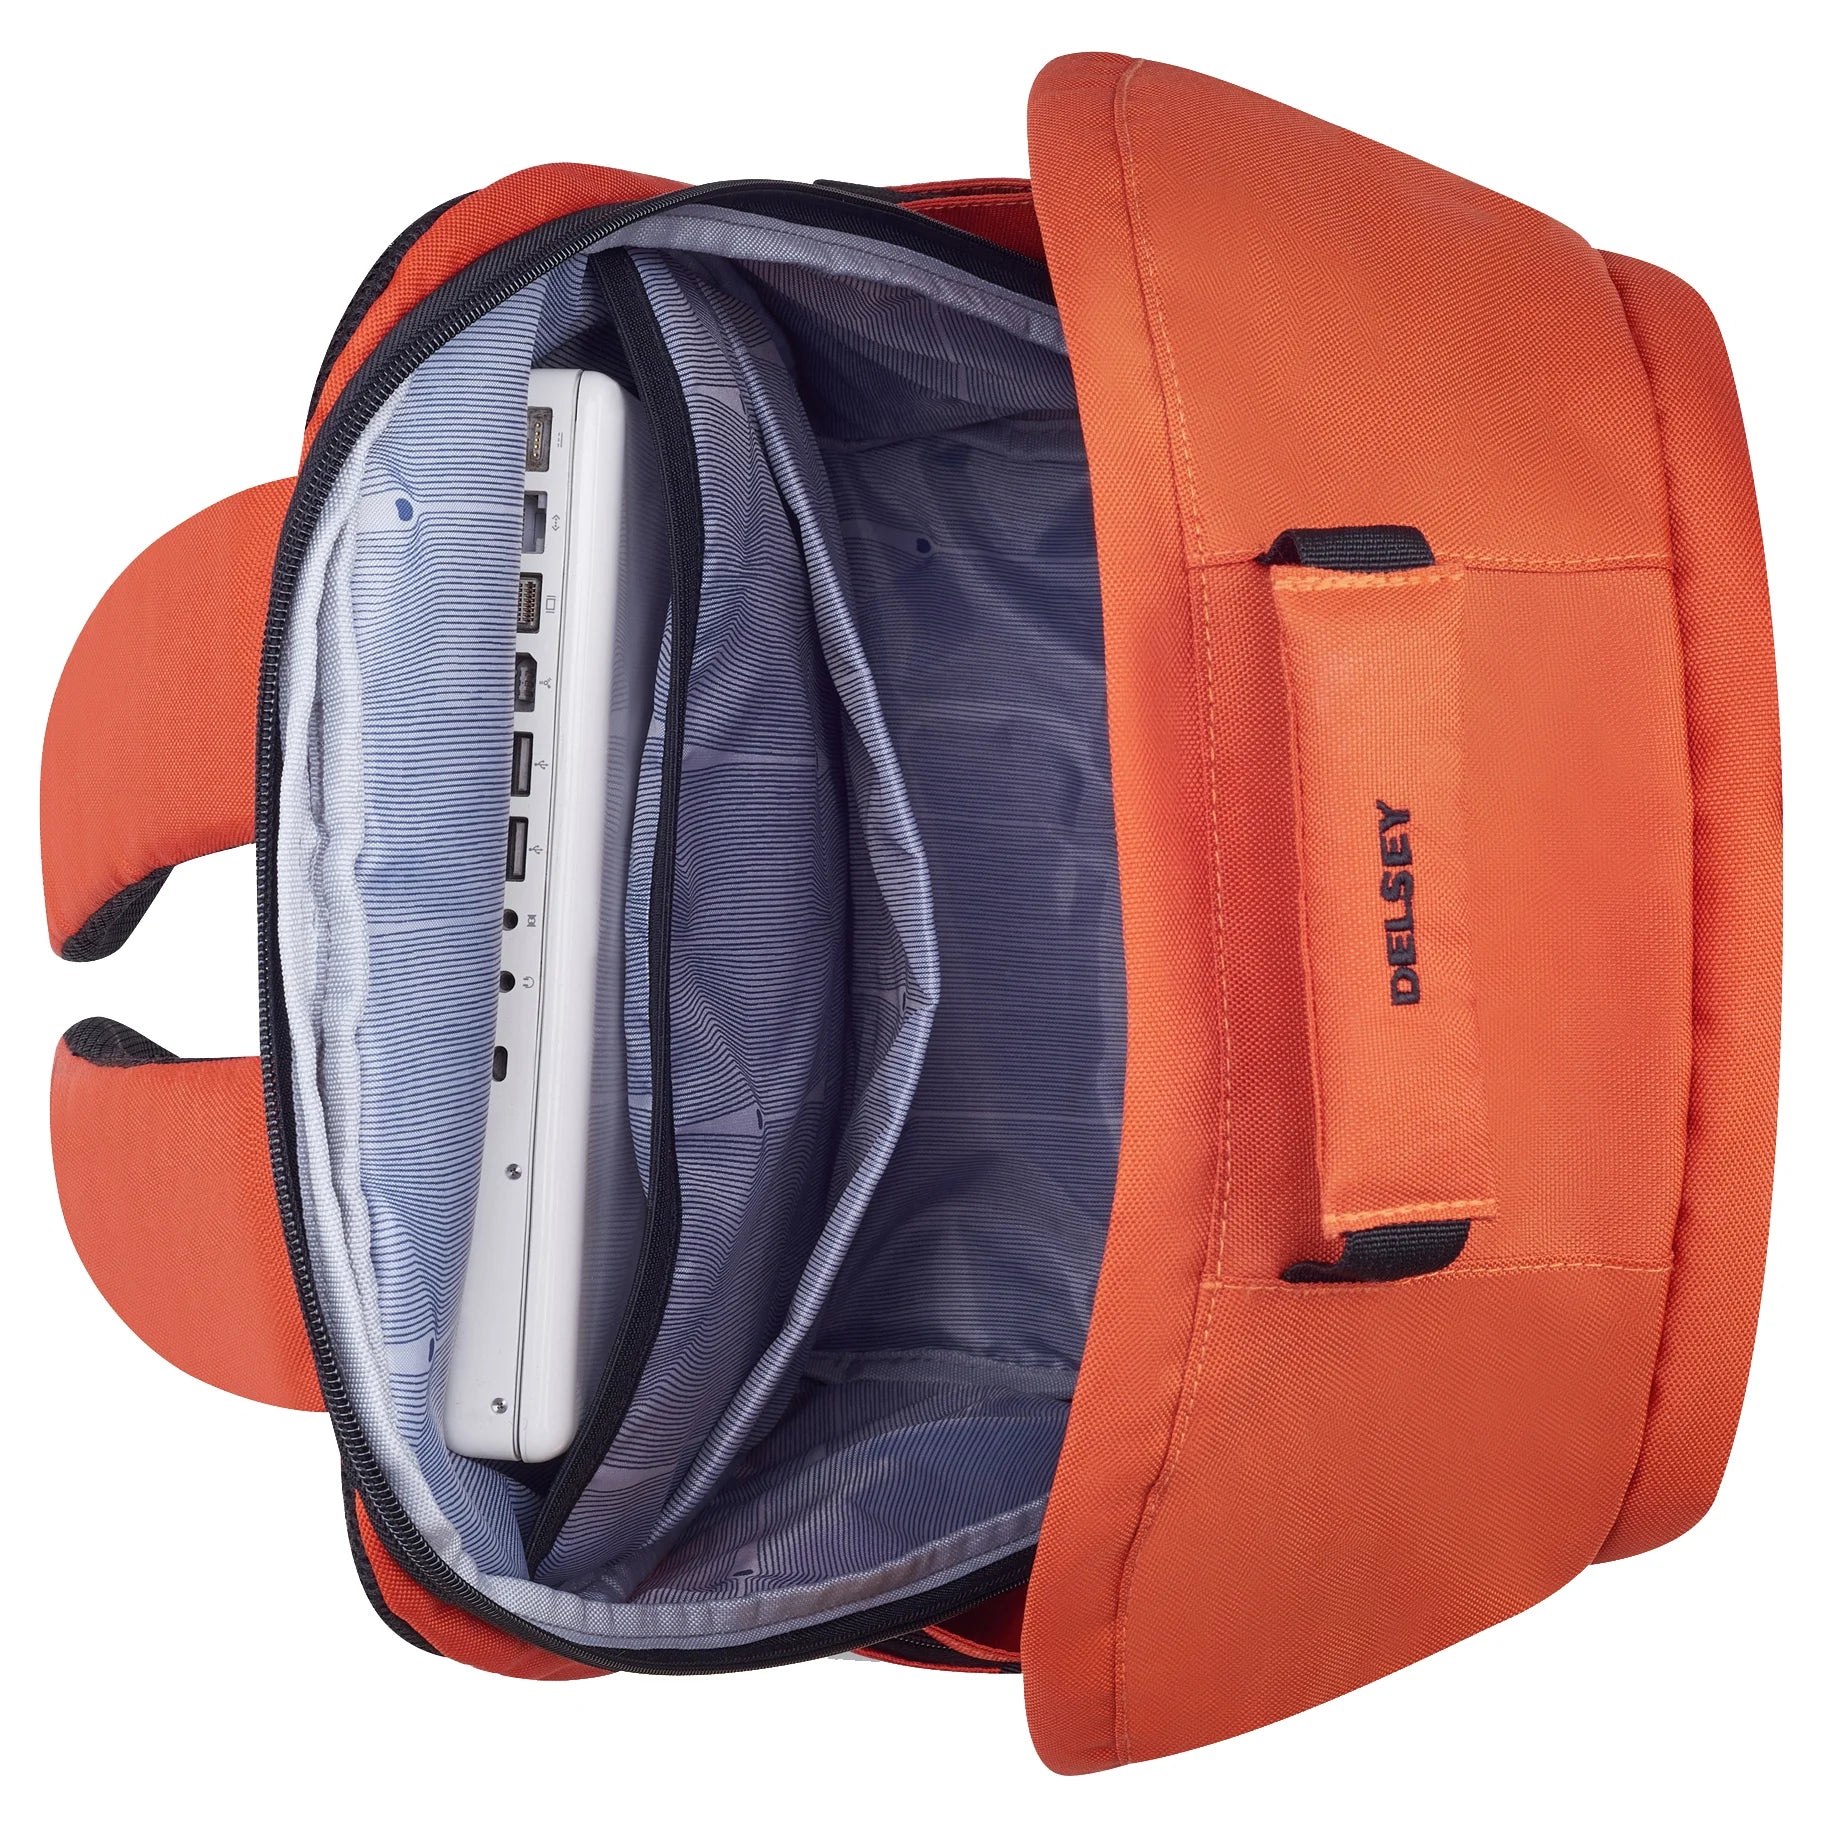 Delsey Securb Sac à dos pour ordinateur portable 48 cm - Orange